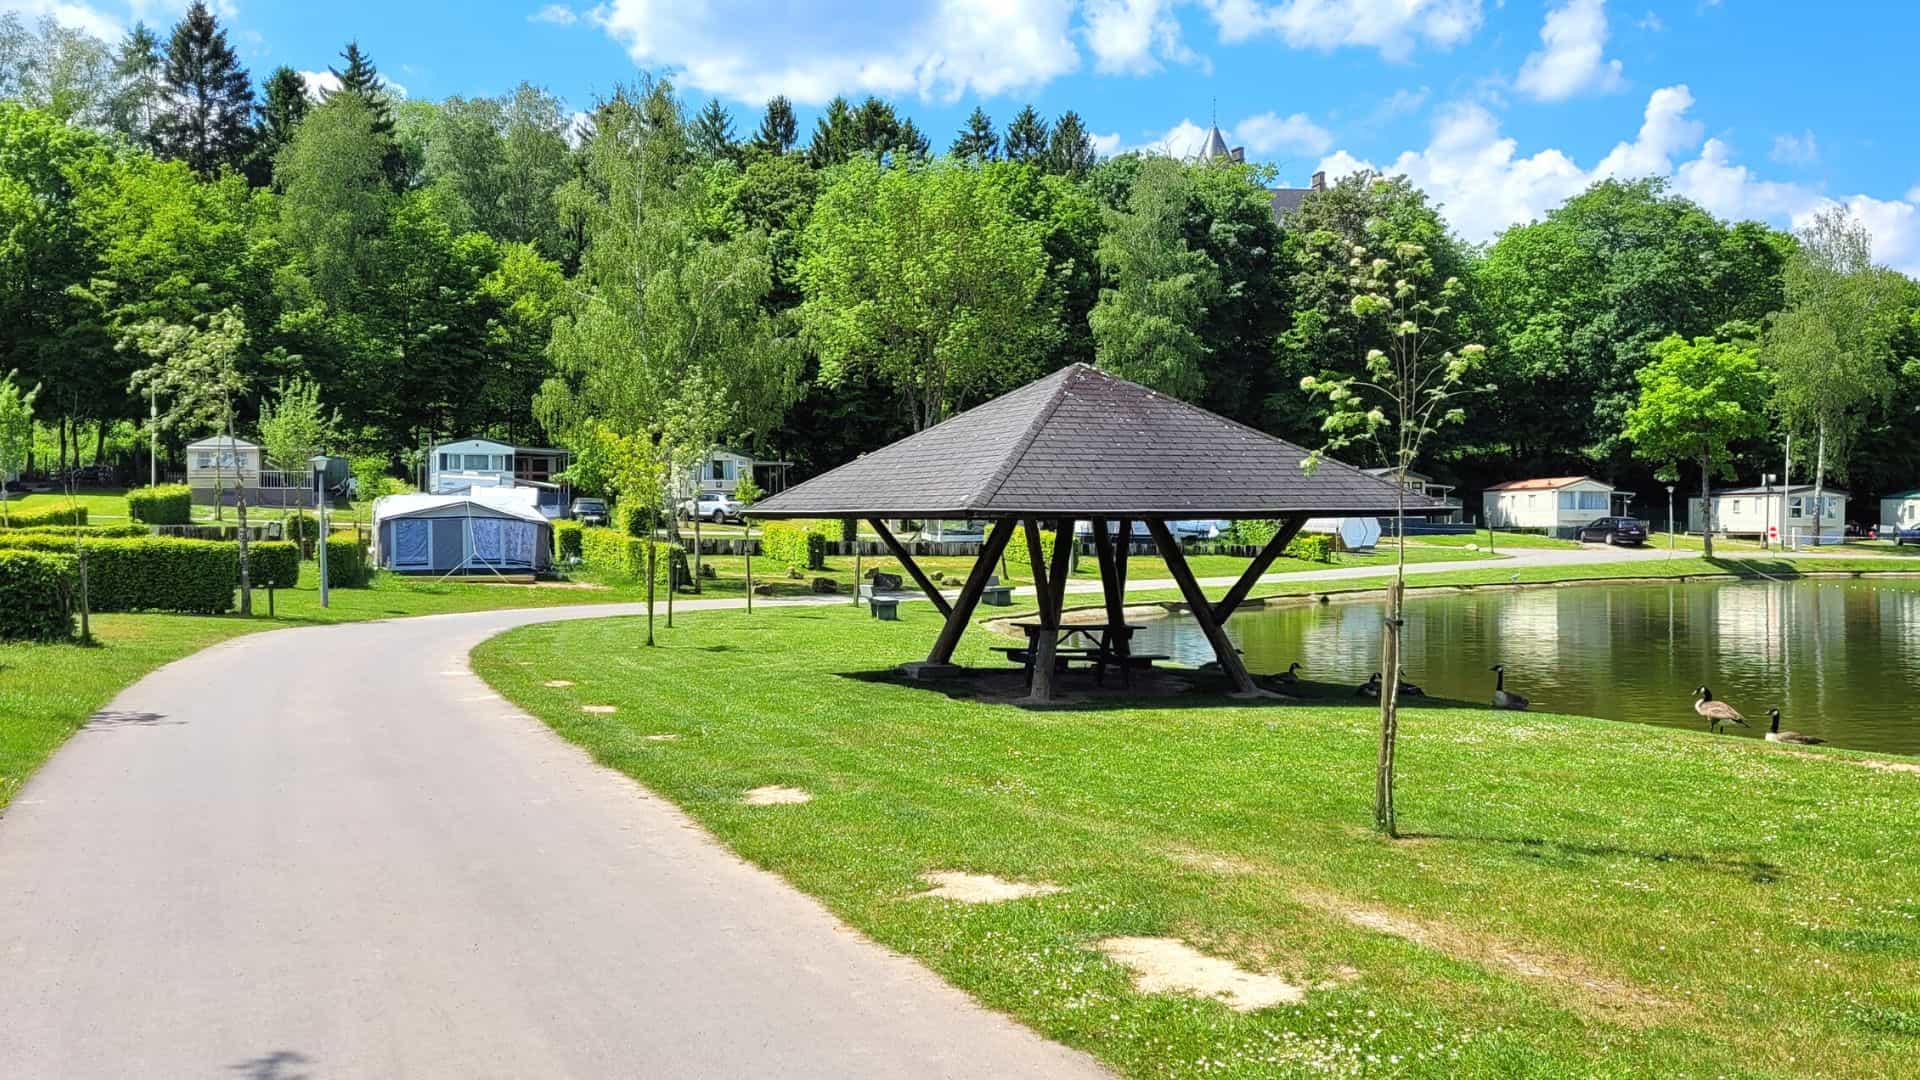 Emplacements de camping touristique pour caravanes tractables et tentes au Domaine Le Val de l'Aisne dans les Ardennes belges